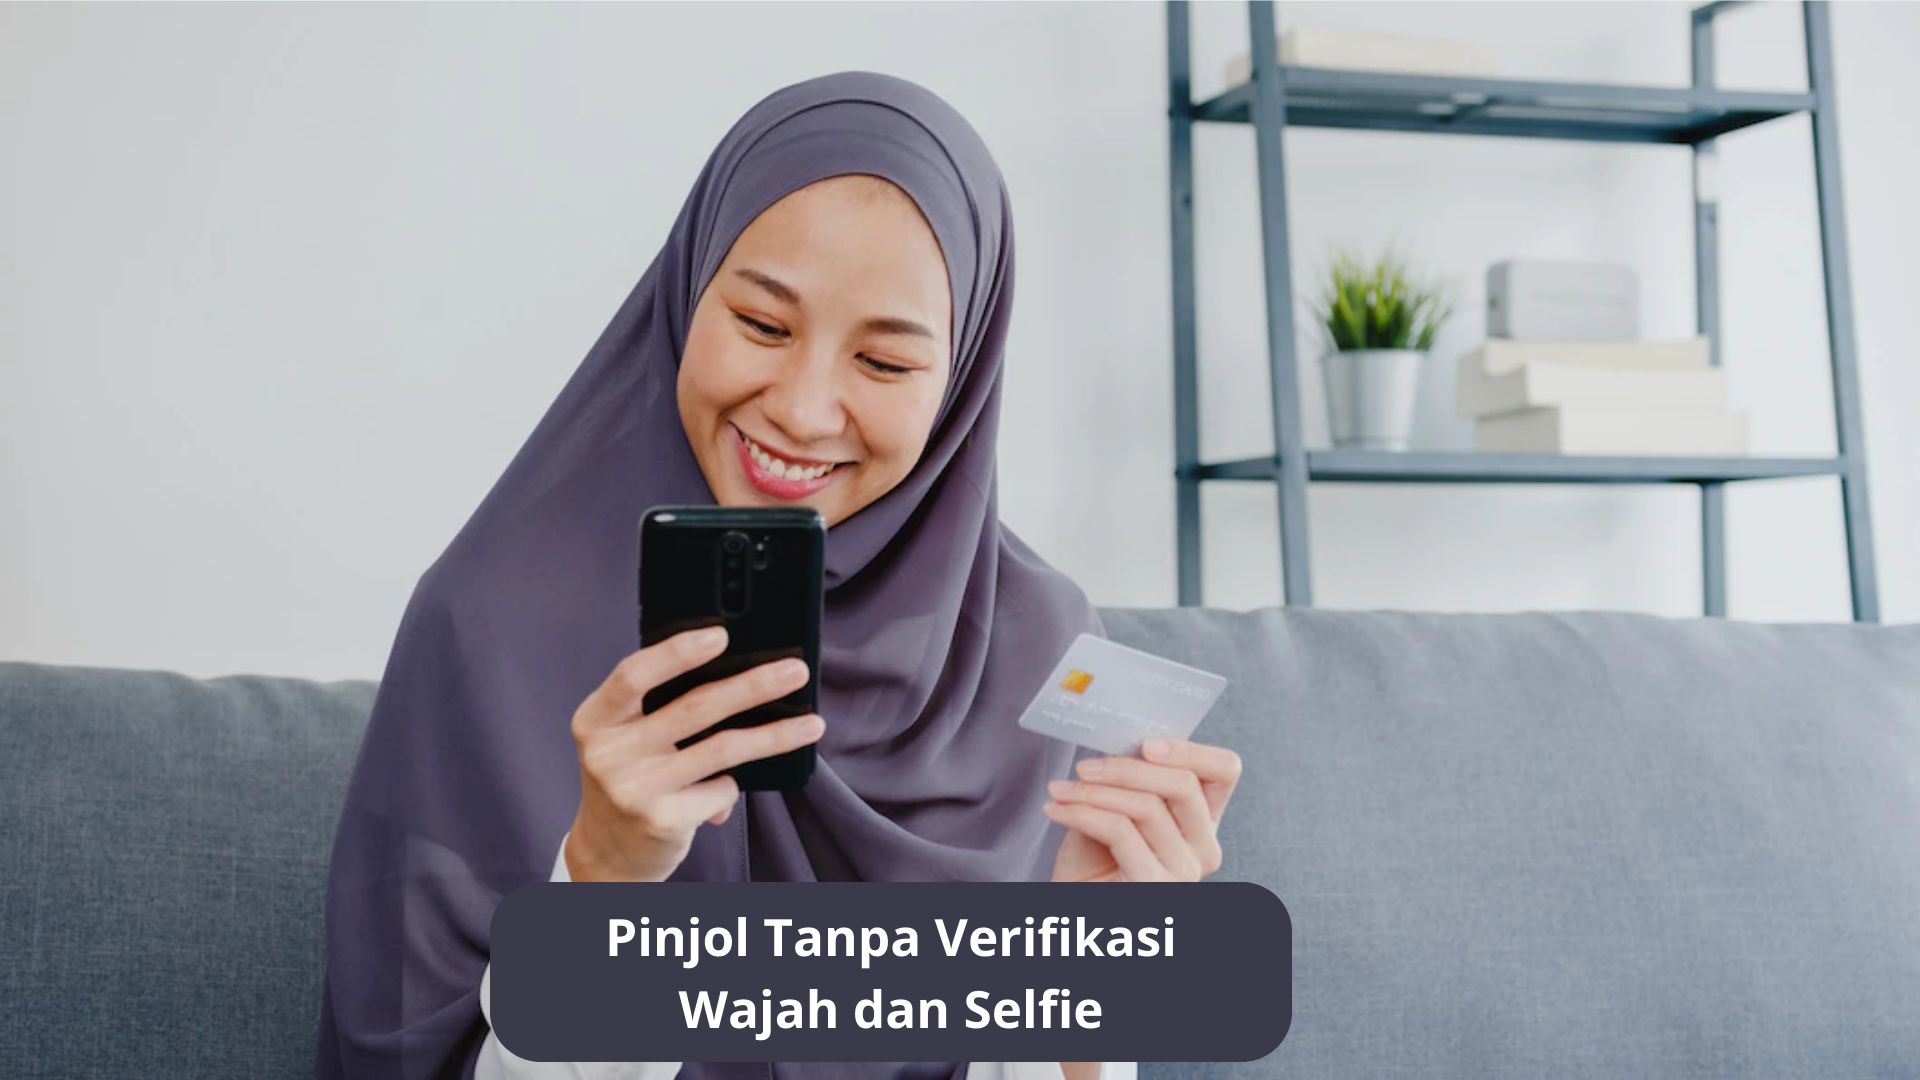 5 Rekomendasi Platfrom Pinjol Tanpa Verifikasi Wajah dan Selfie, Solusi Tepat saat Terdesak